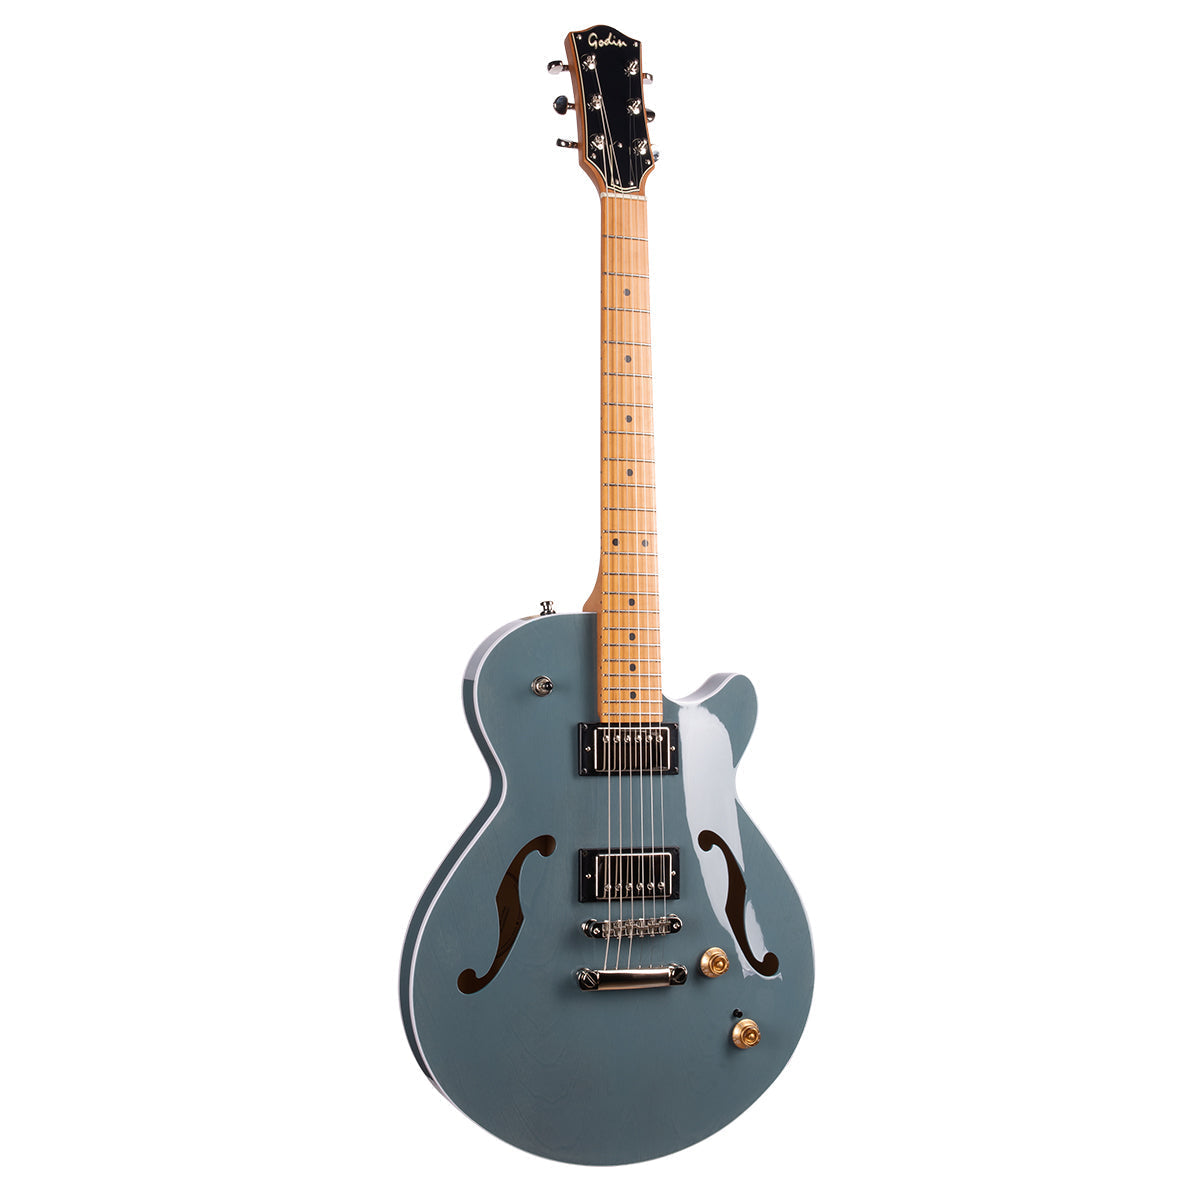 Godin Montreal Premiere Pro Semi-Acoustic Guitar ~ Aztek Blue, Electric Guitar for sale at Richards Guitars.